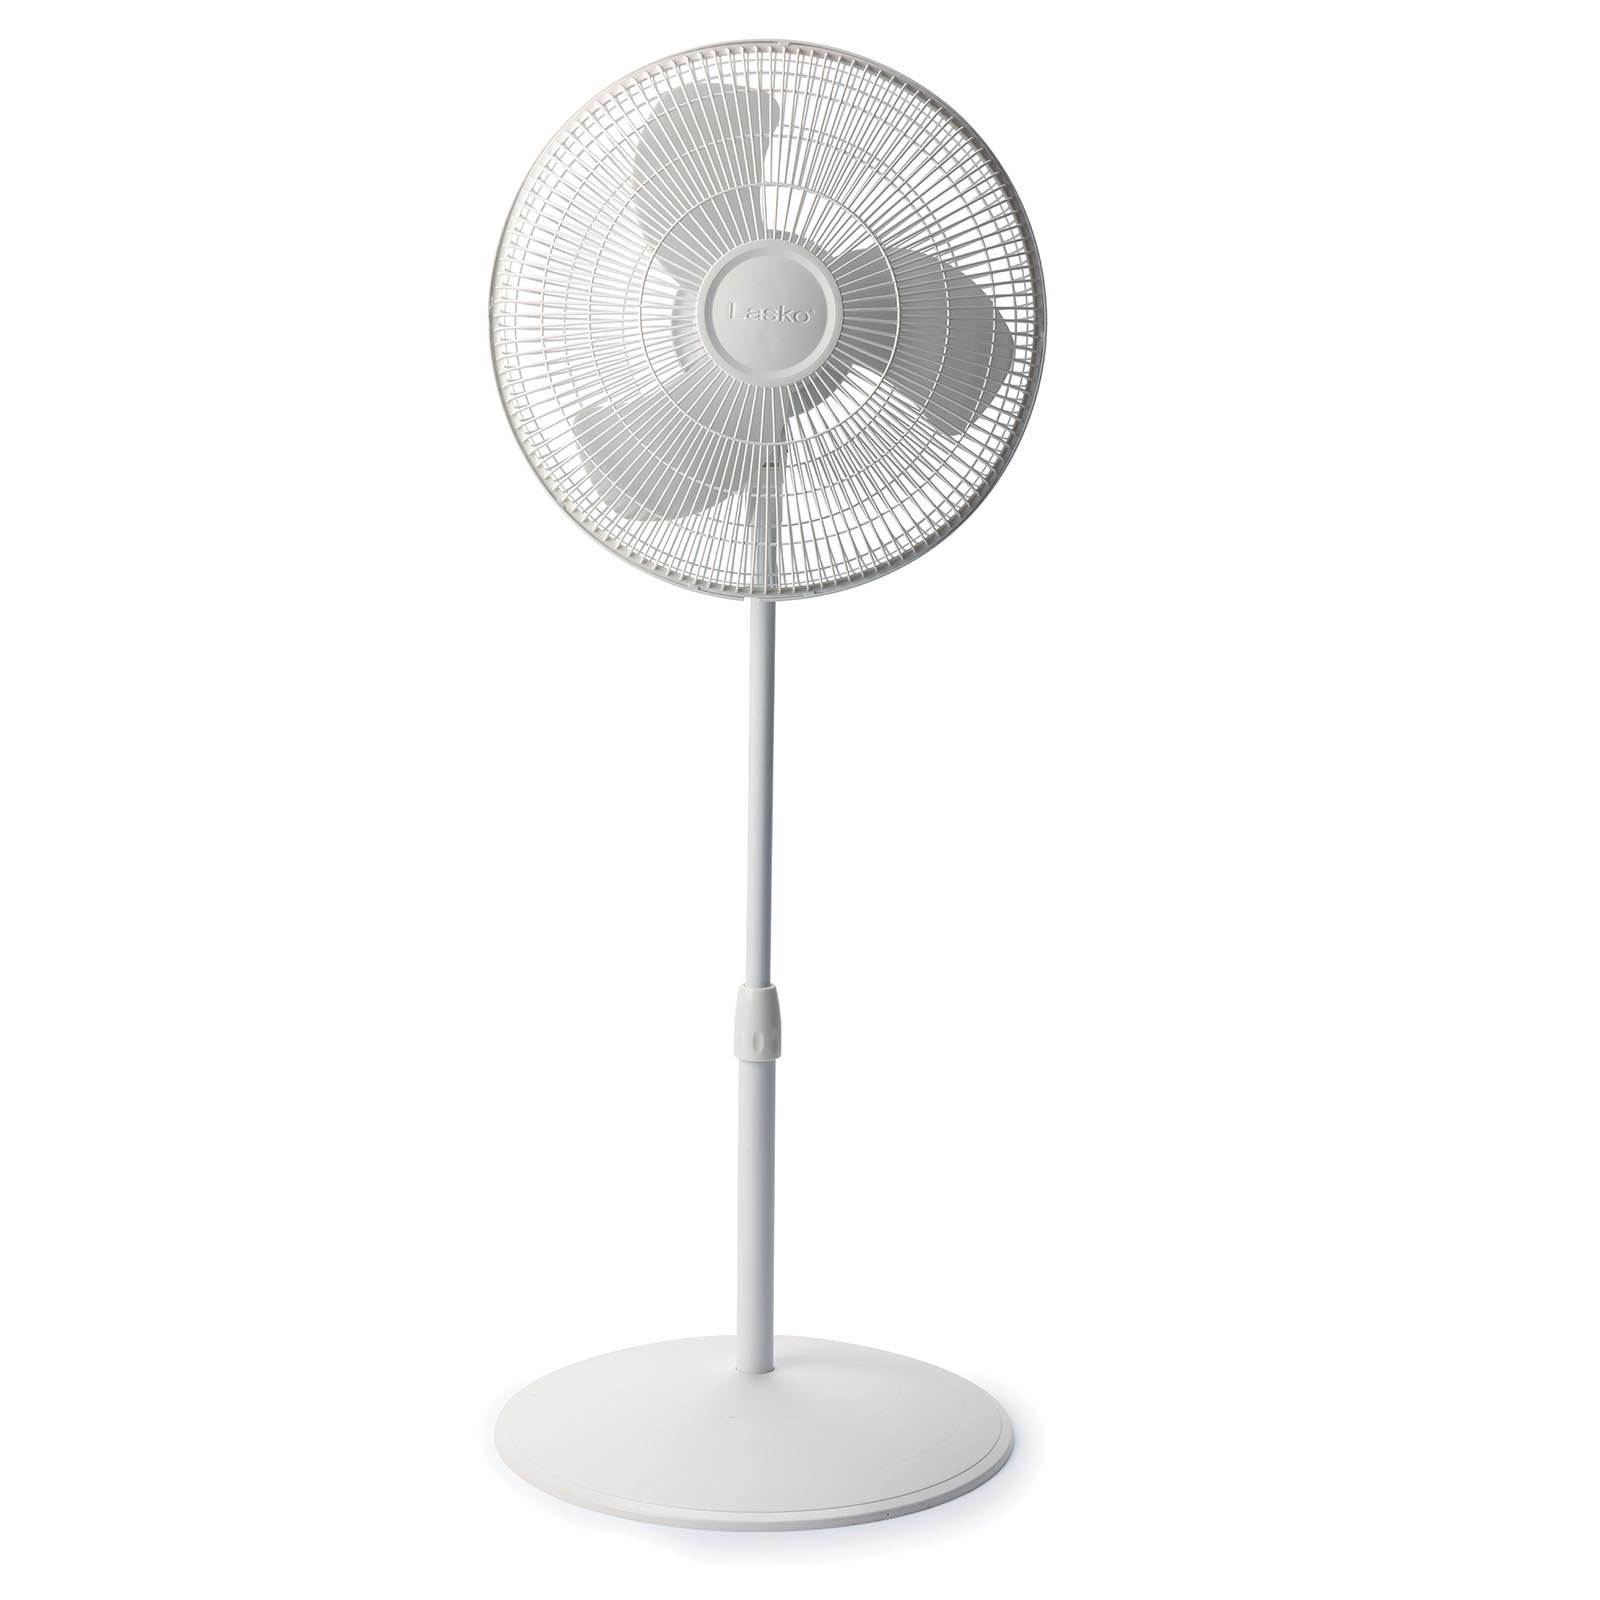 Lasko 16 Inch 3 Speed Oscillating Adjustable Stand Pedestal Floor Fan, White 46013457318 | eBay